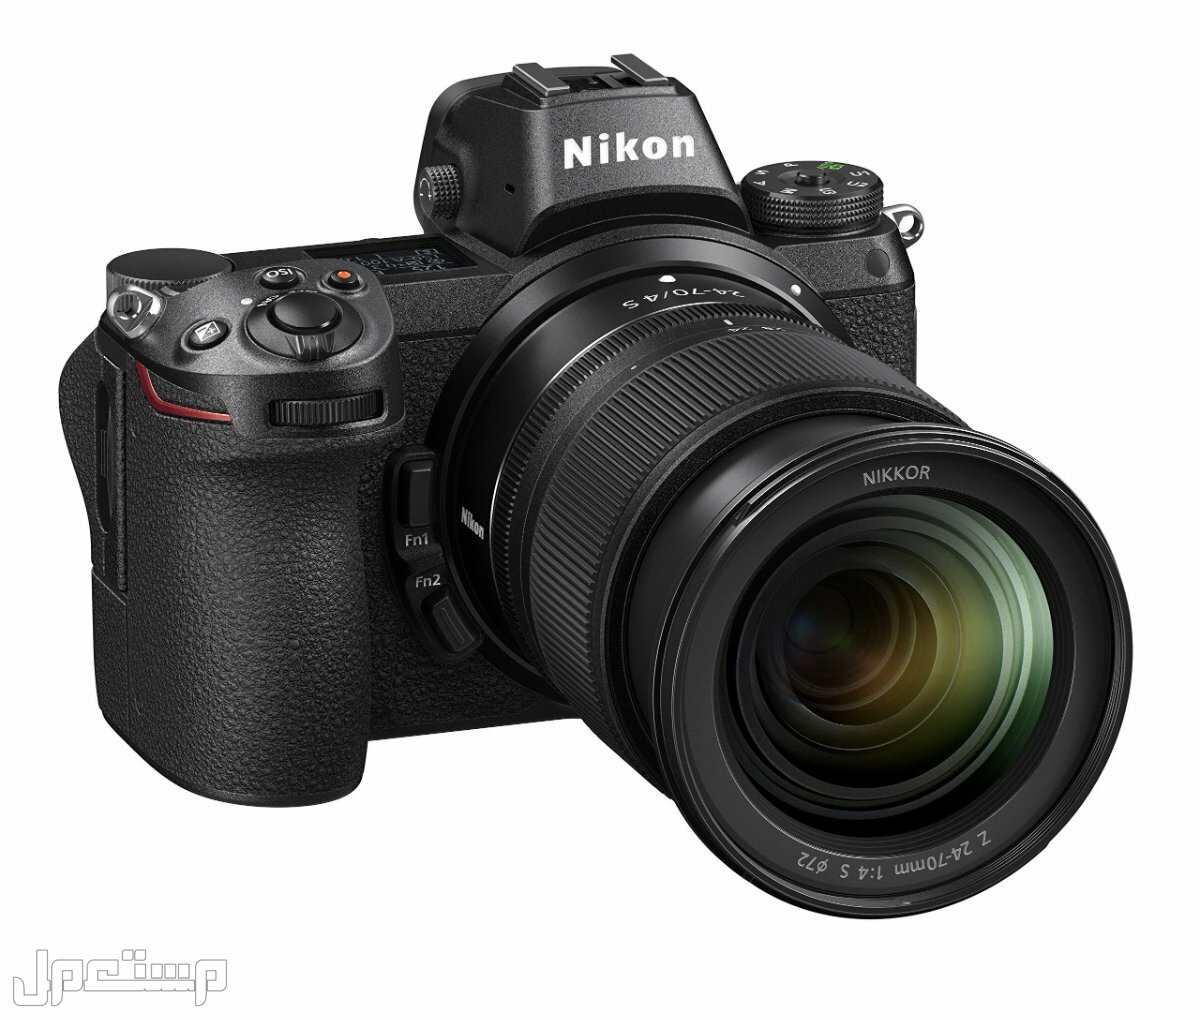 مواصفات ومميزات وأسعار أفضل أنواع كاميرات نيكون للمحترفين في ليبيا كاميرا Nikon Z6